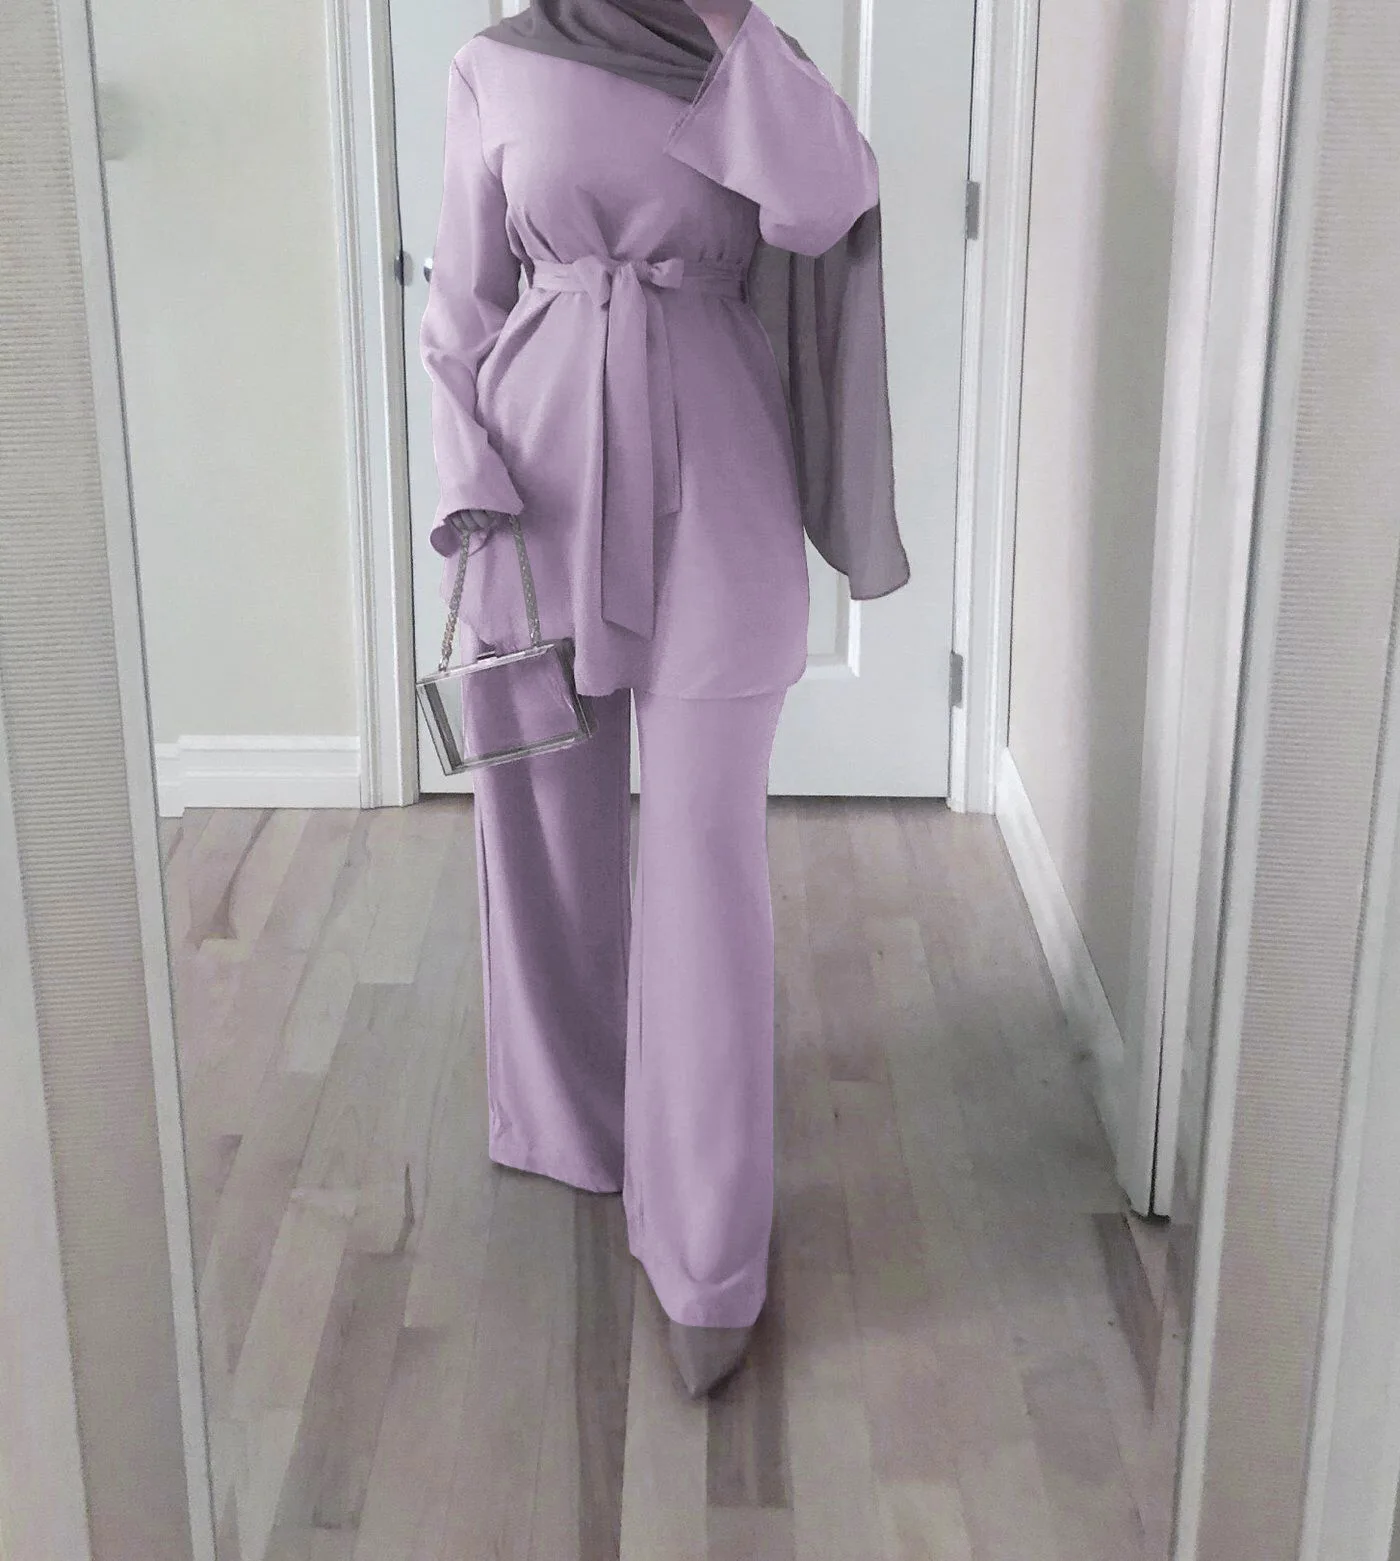 Artículo caliente Conjuntos de 2 piezas musulmanas para mujer, Tops y pantalones con cordones de Ramadán, Hijab de caftán Abaya de Turquía, ropa Europea modesta, conjuntos de musman kjQlMR7Mqxn